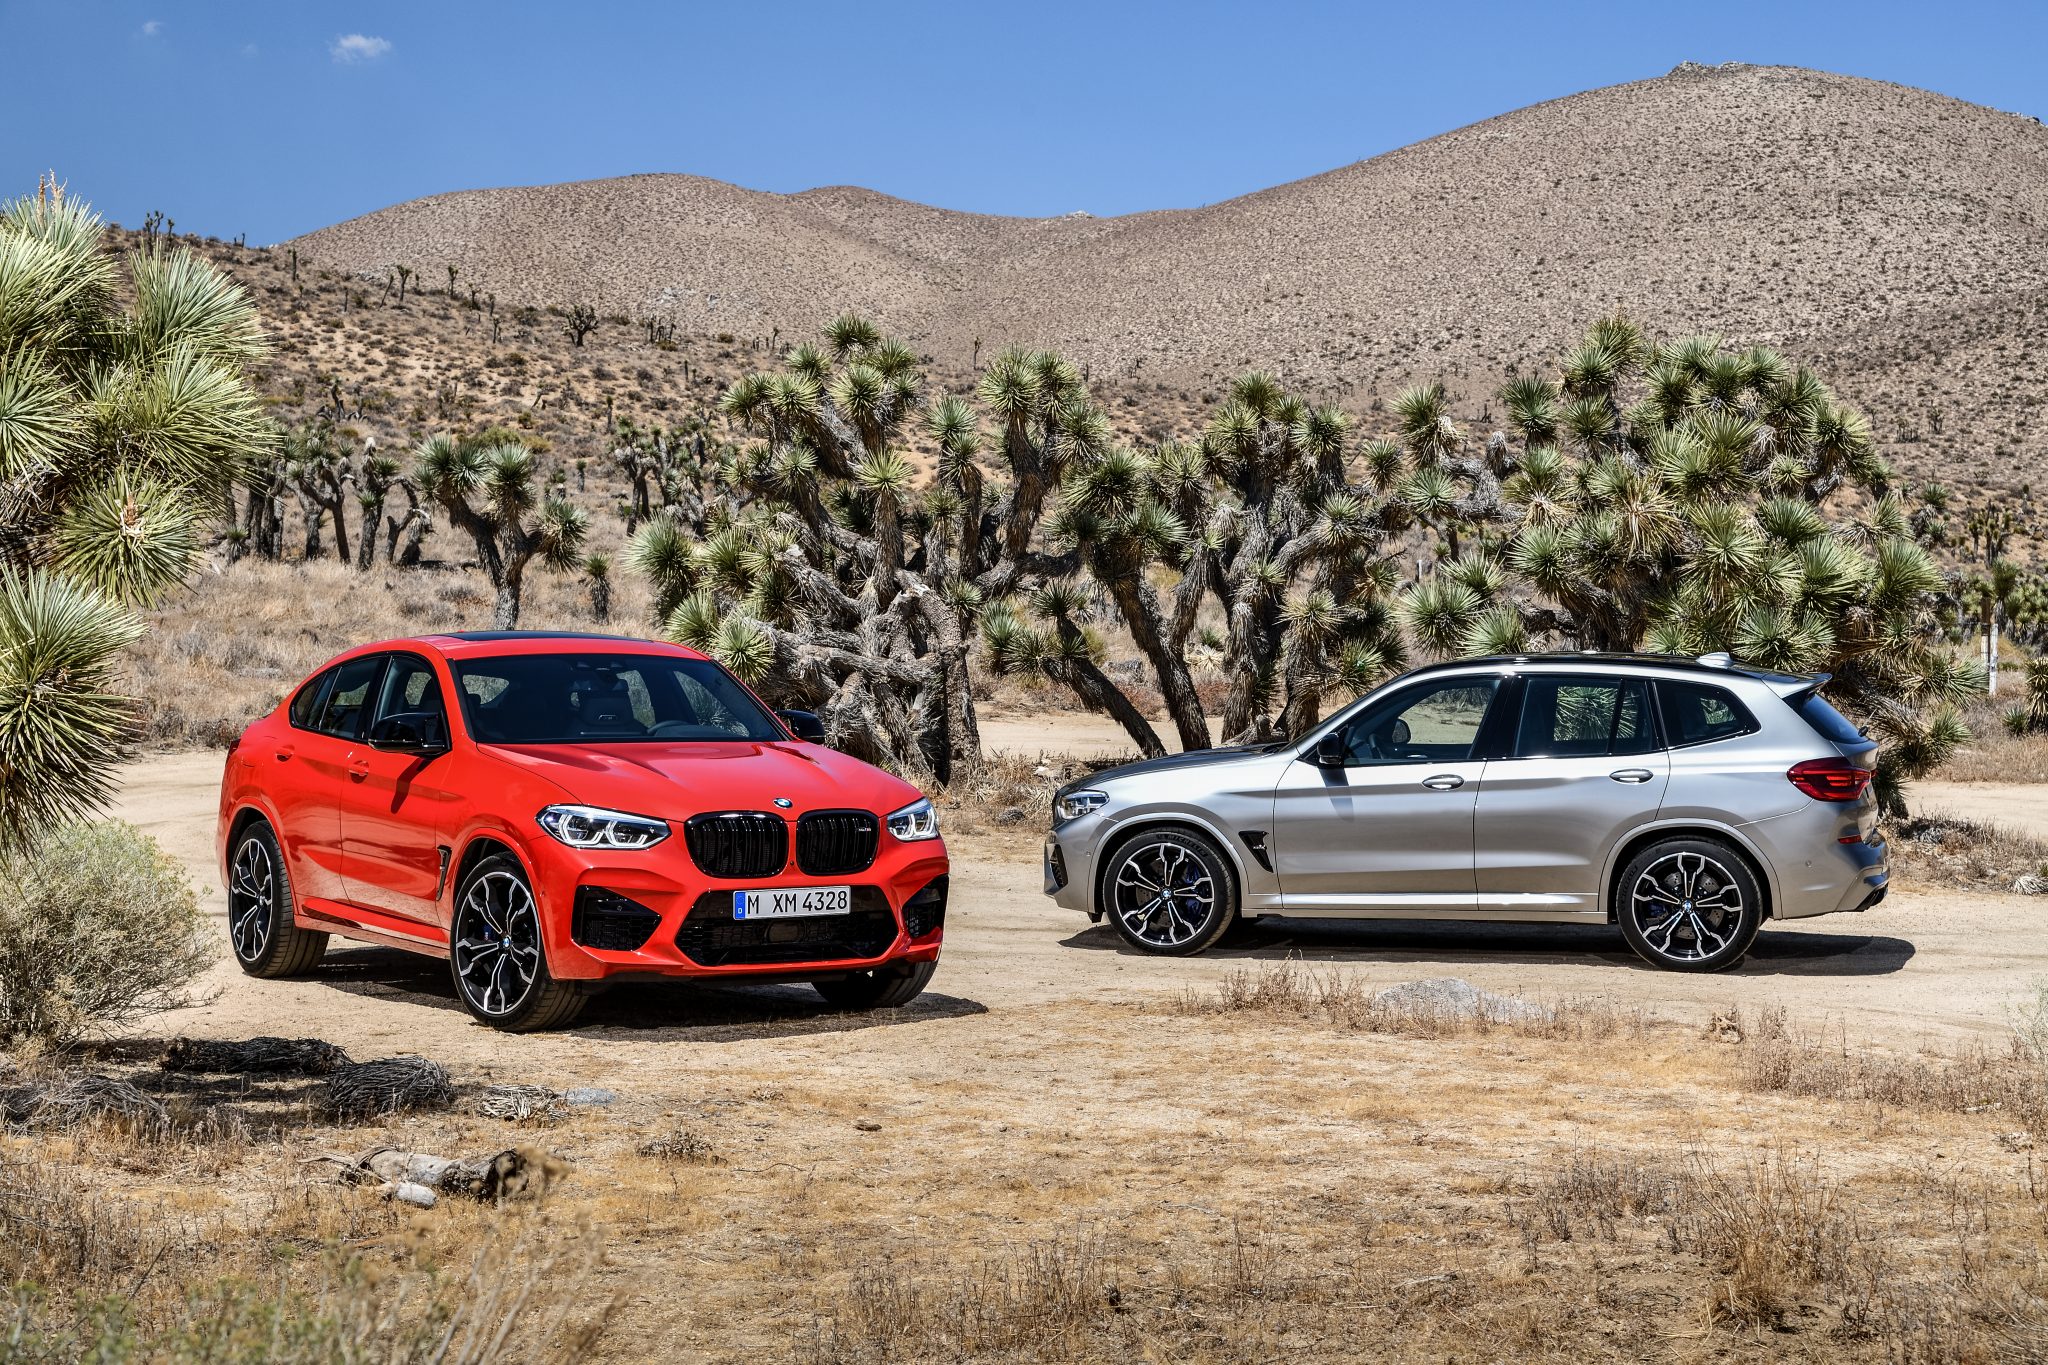 BMW oficiálne predstavilo modely X3 M a X4 M spoločne s ich verziami Competition